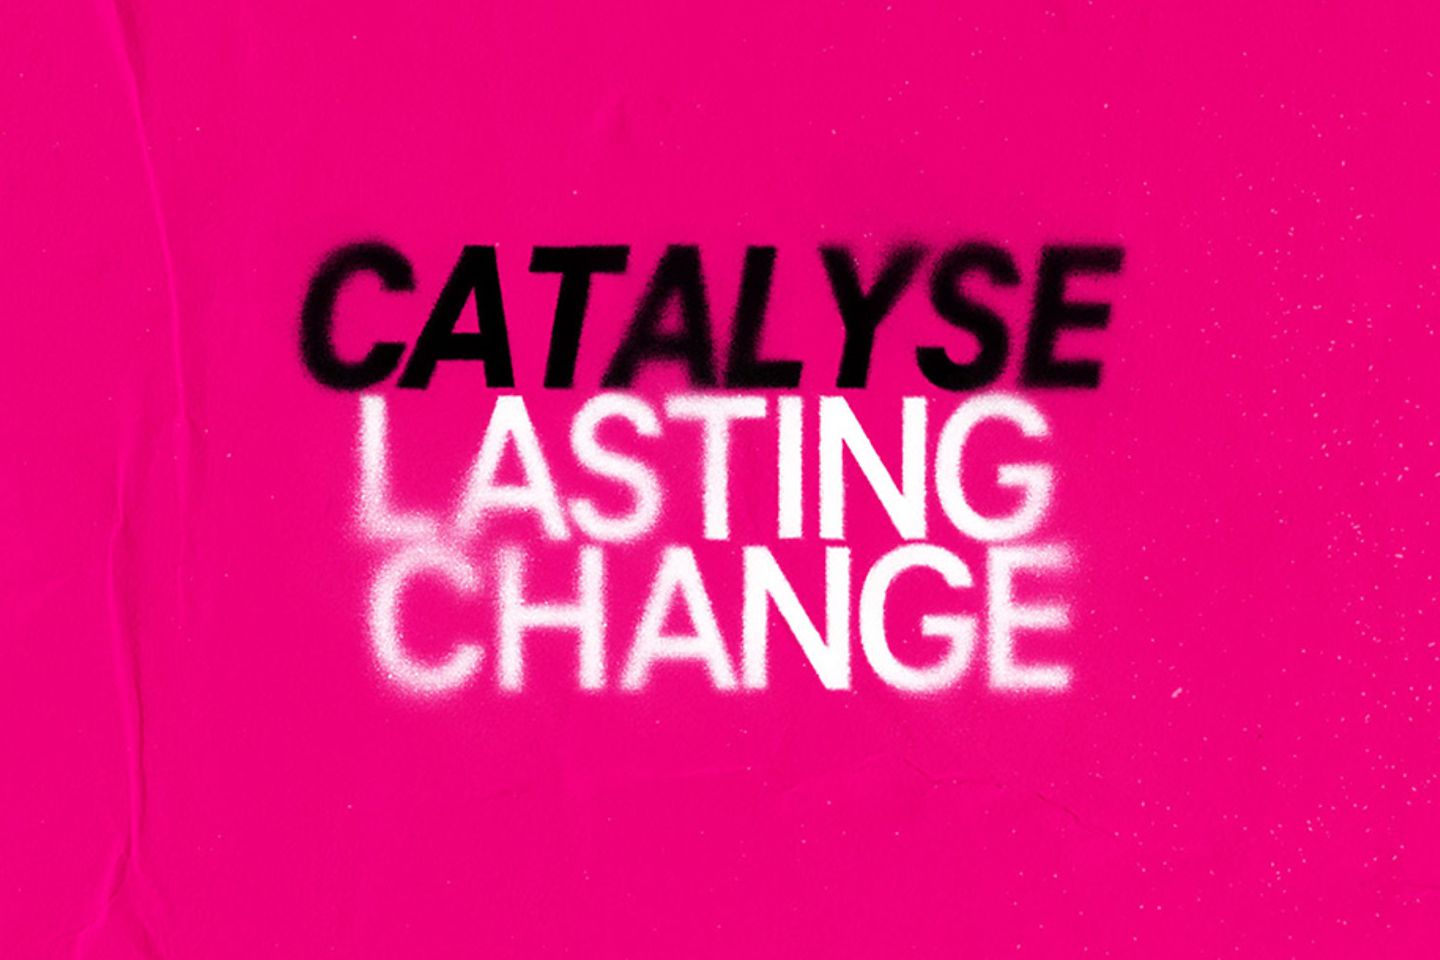 Imagen con error tipográfico “Catalizar el cambio duradero”